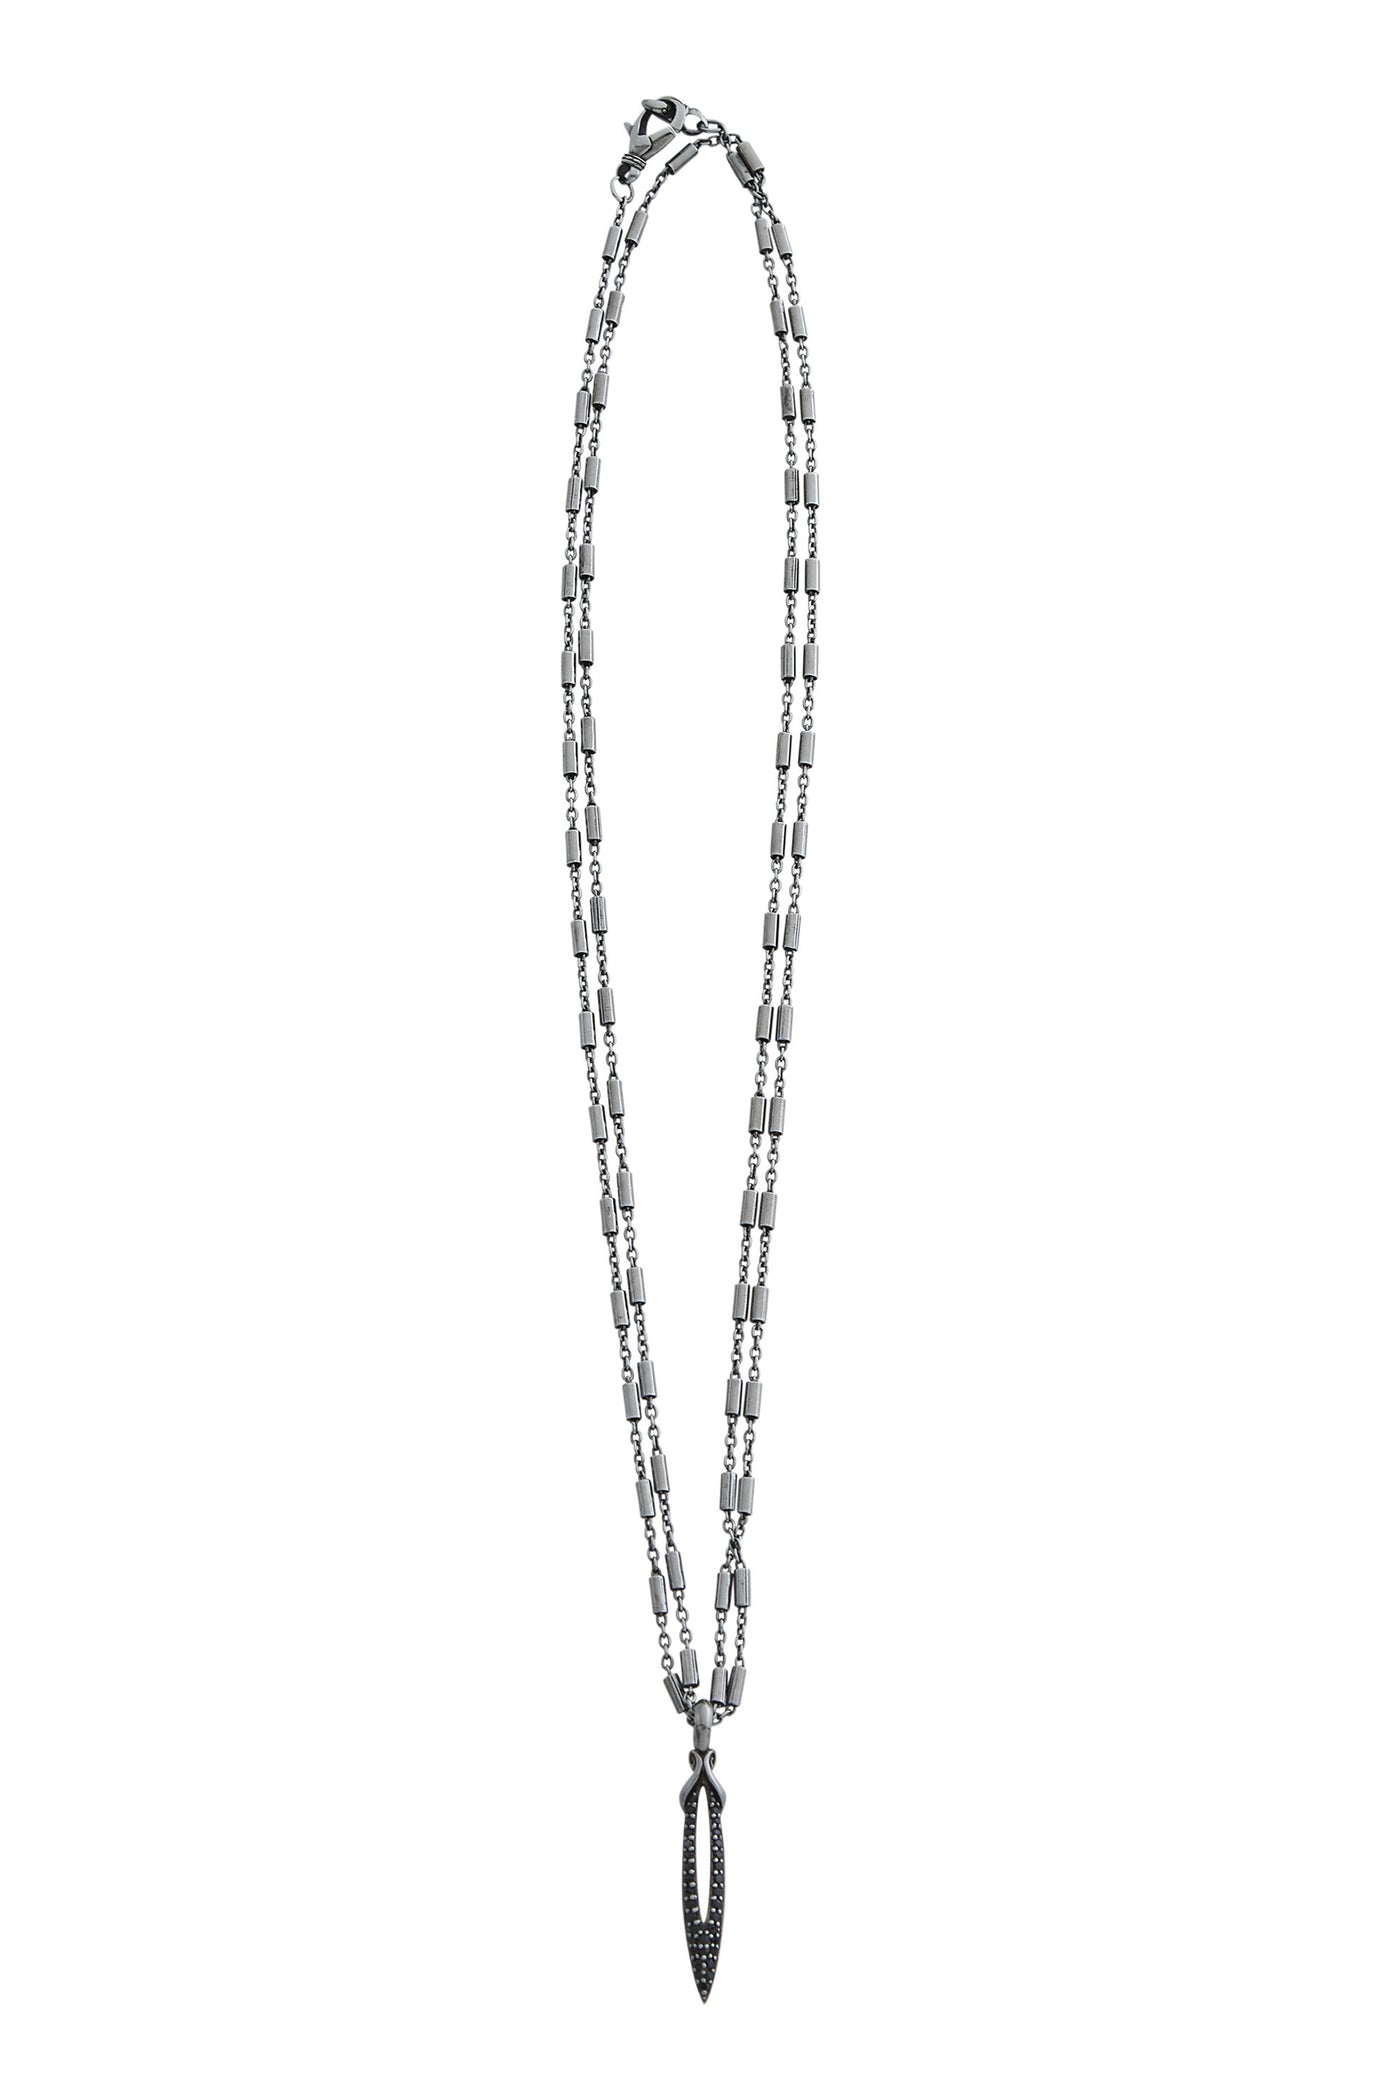 black ruthenium chain necklace